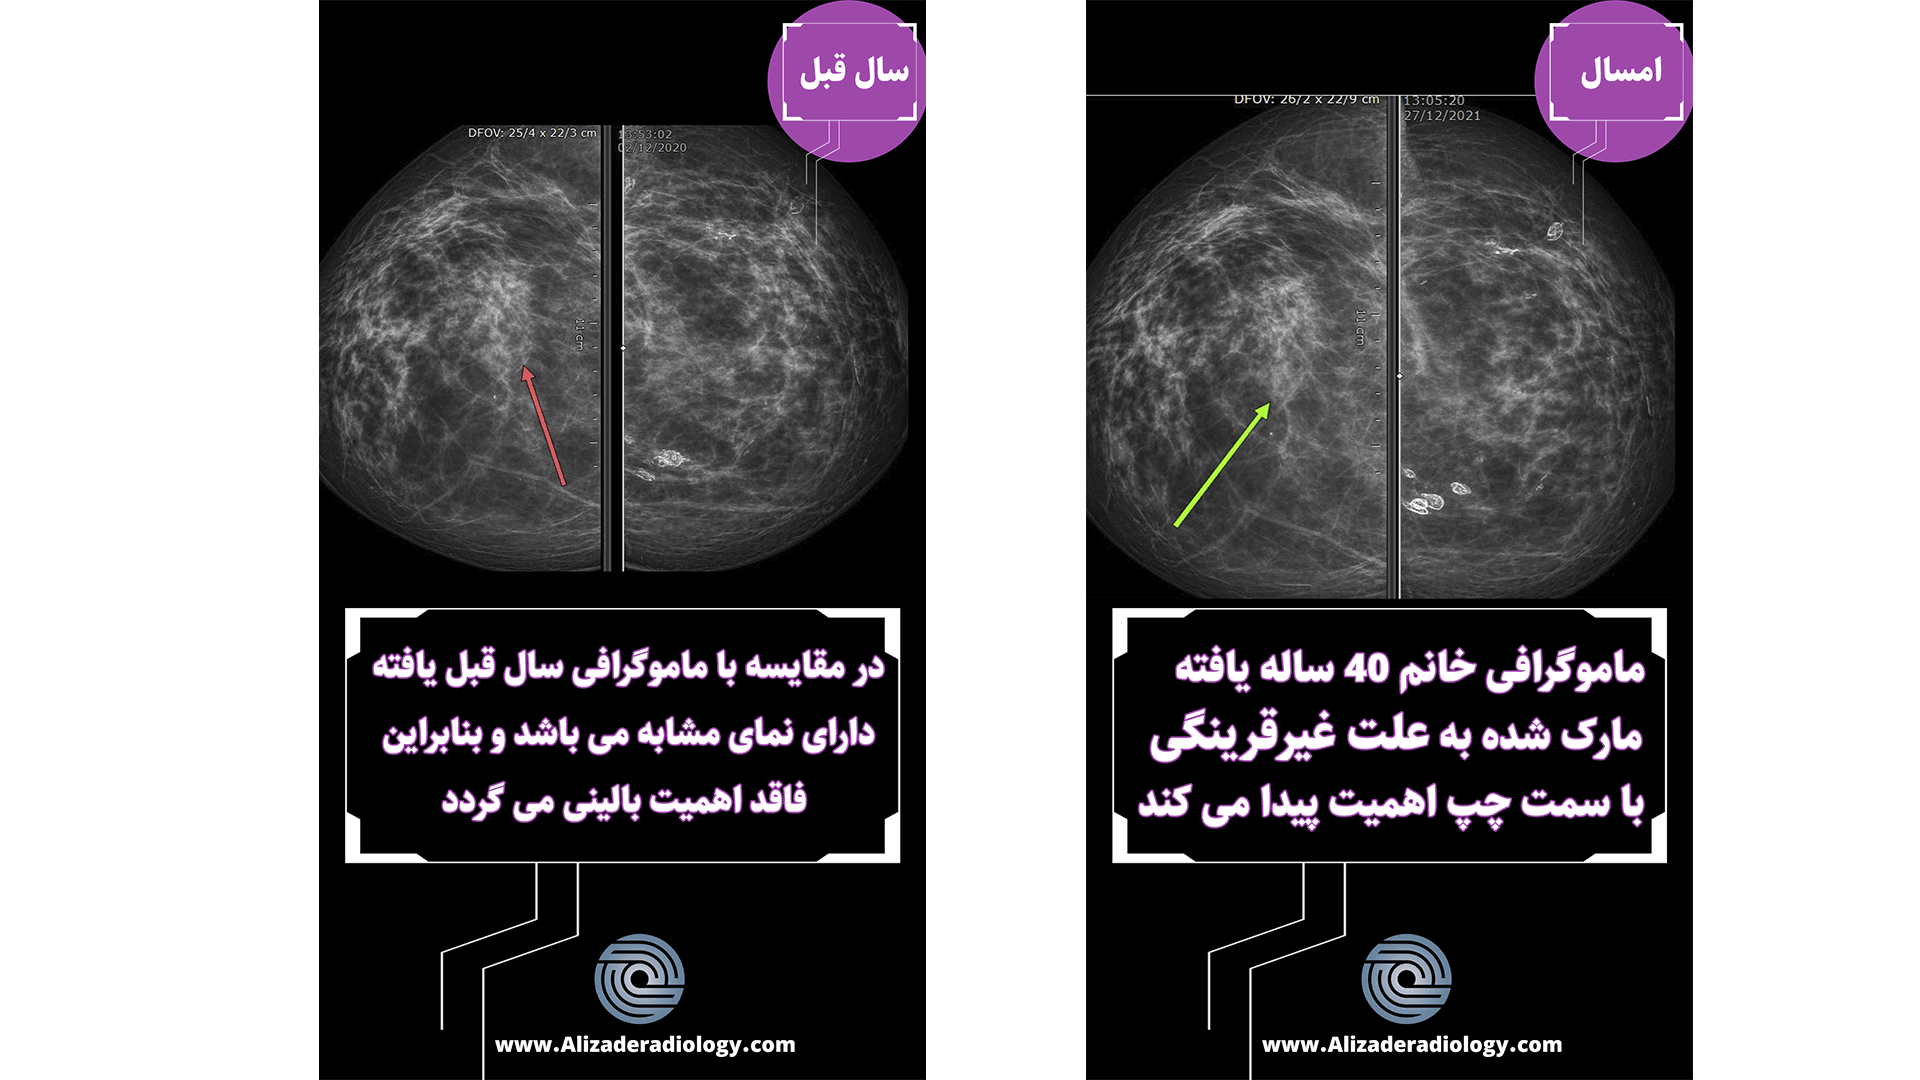 مقایسه ماموگرافی های سالیانه یک بیمار